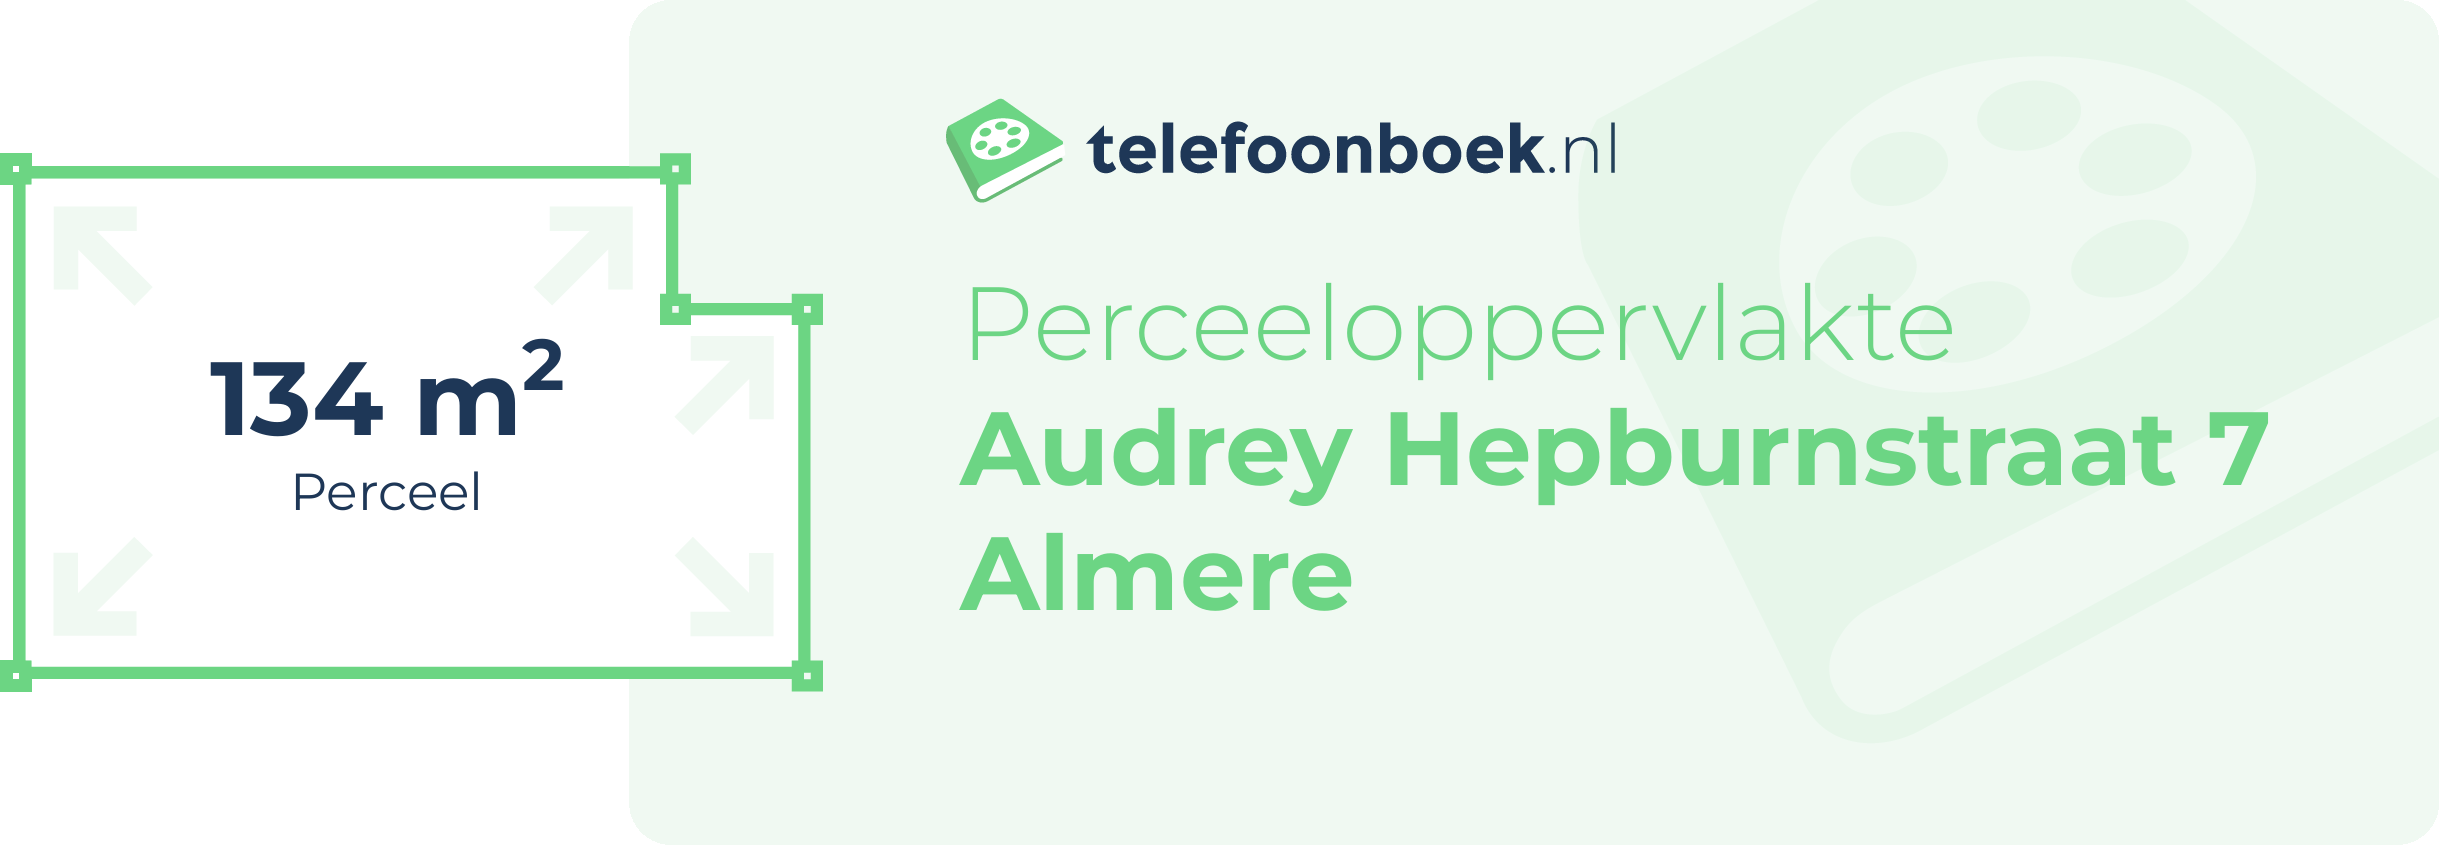 Perceeloppervlakte Audrey Hepburnstraat 7 Almere